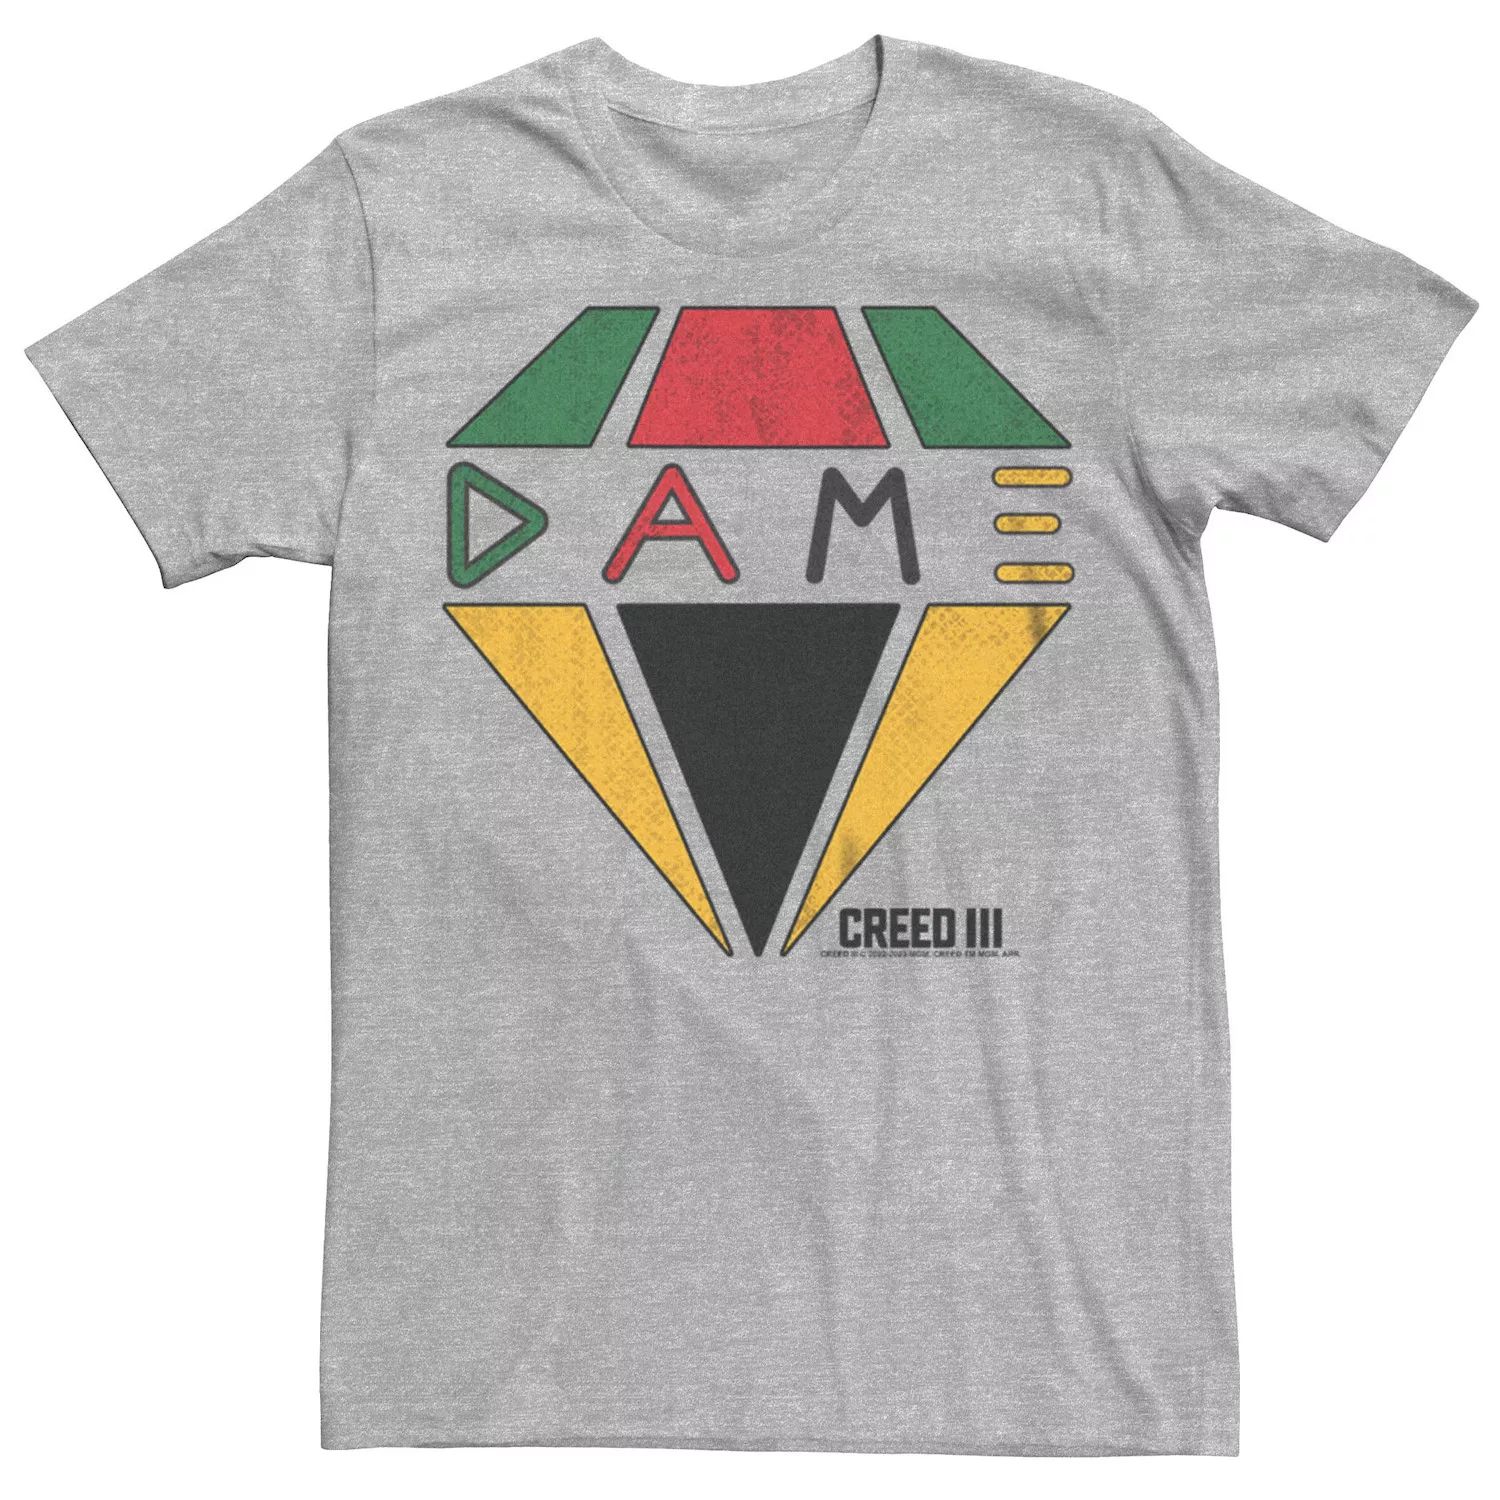 Мужская футболка с рисунком Creed III Dame Icon Licensed Character